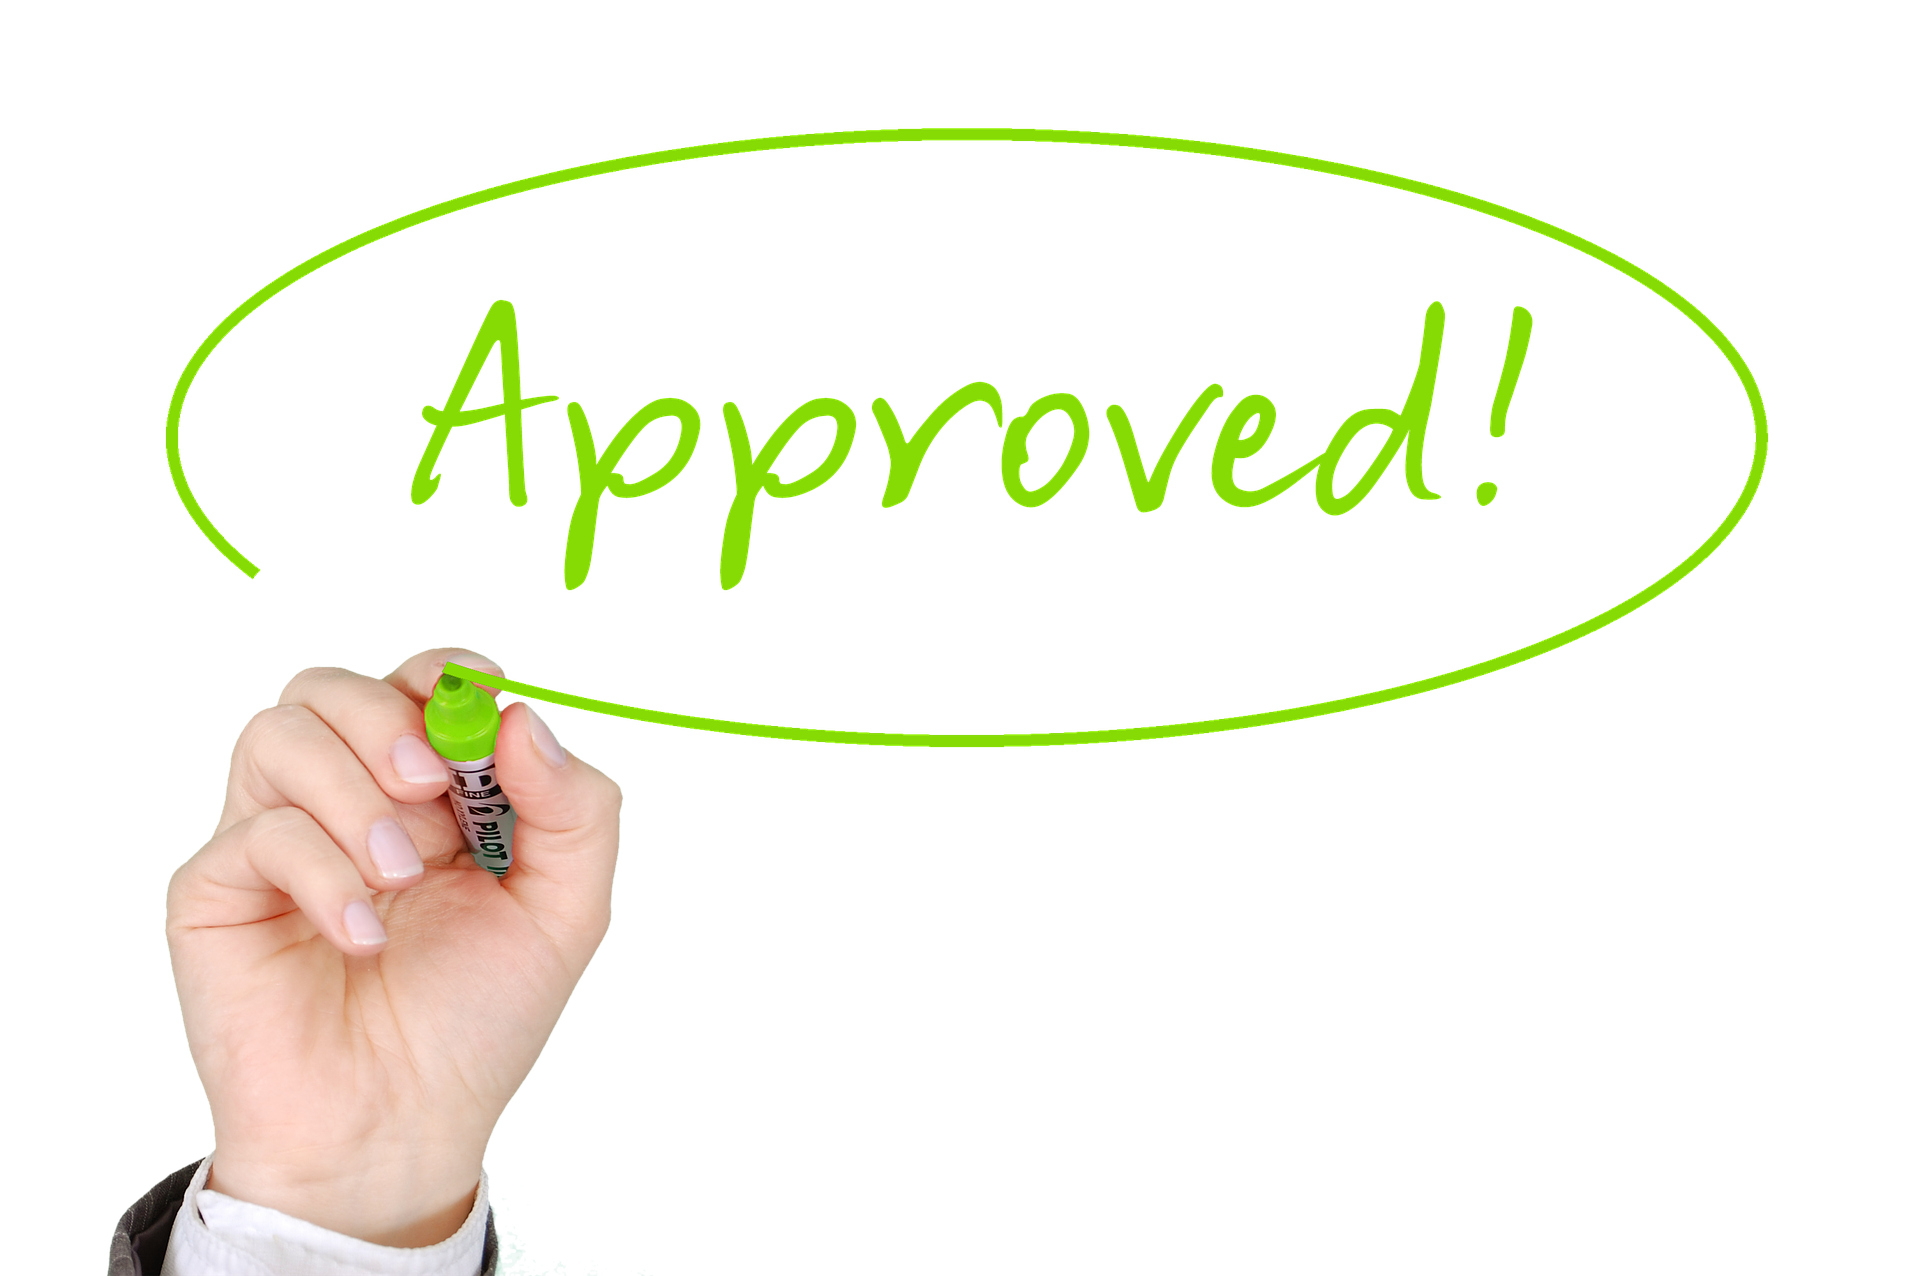 Enfim, confira neste review empréstimo pessoal Bom Pra Crédito o passo a passo para obter o crédito que precisa. Fonte: Pixabay.